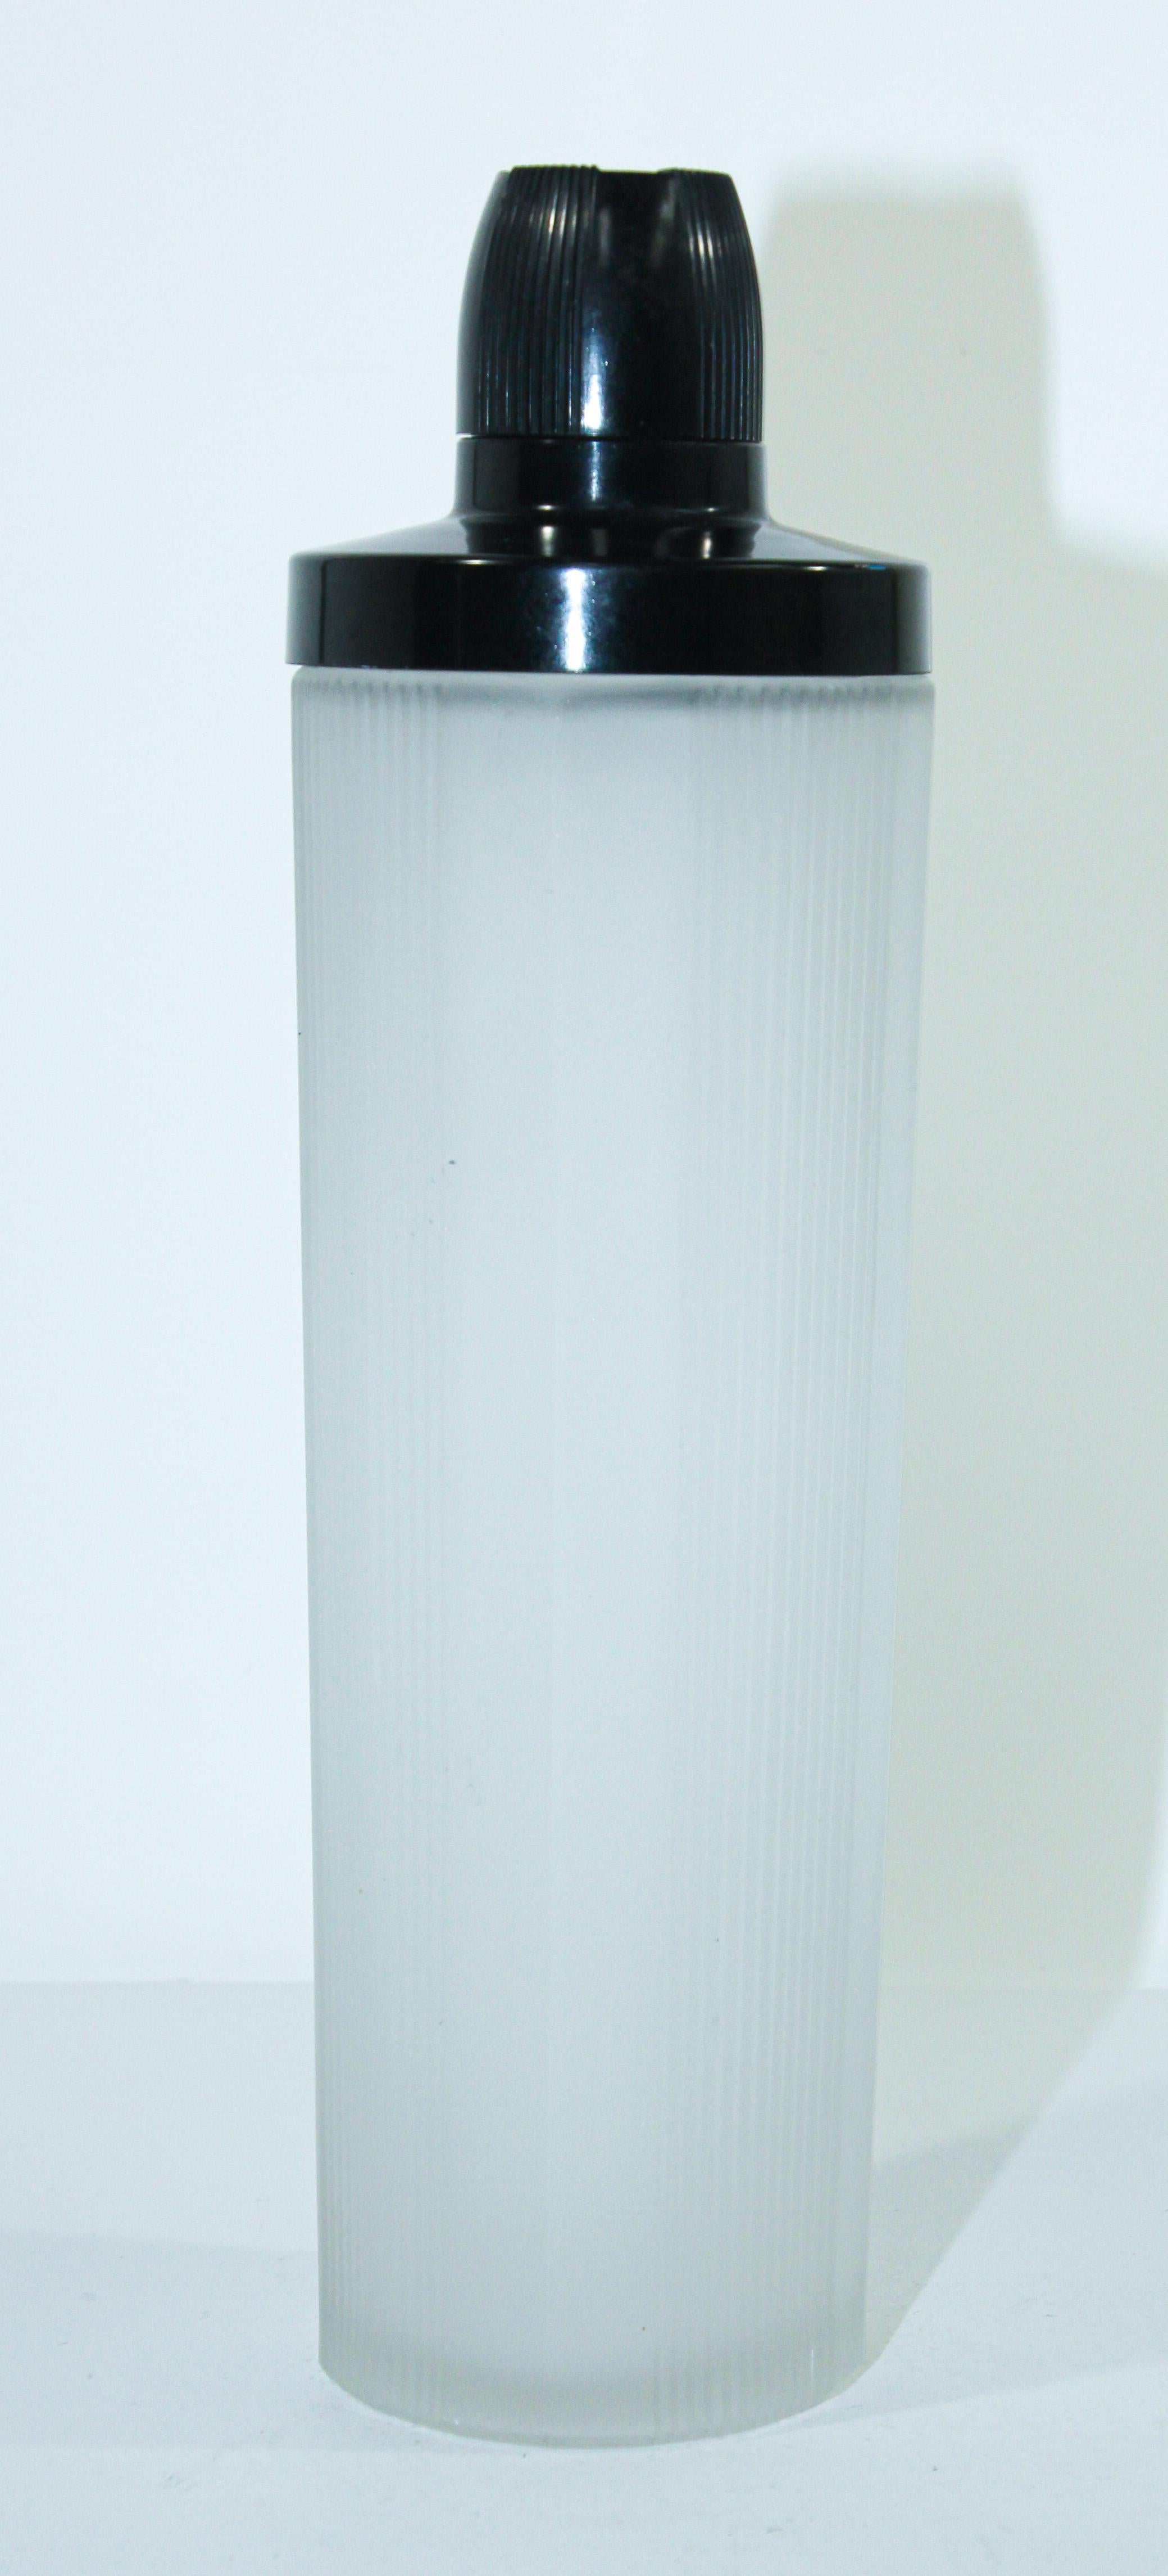 Vieux shaker Empire Art Déco en verre dépoli et bakélite
Shaker à cocktail en verre dépoli Art Déco vers les années 1930. 
La touche parfaite pour un look rétro-déco.
Ce shaker vintage en verre dépoli avec des nervures verticales est de style